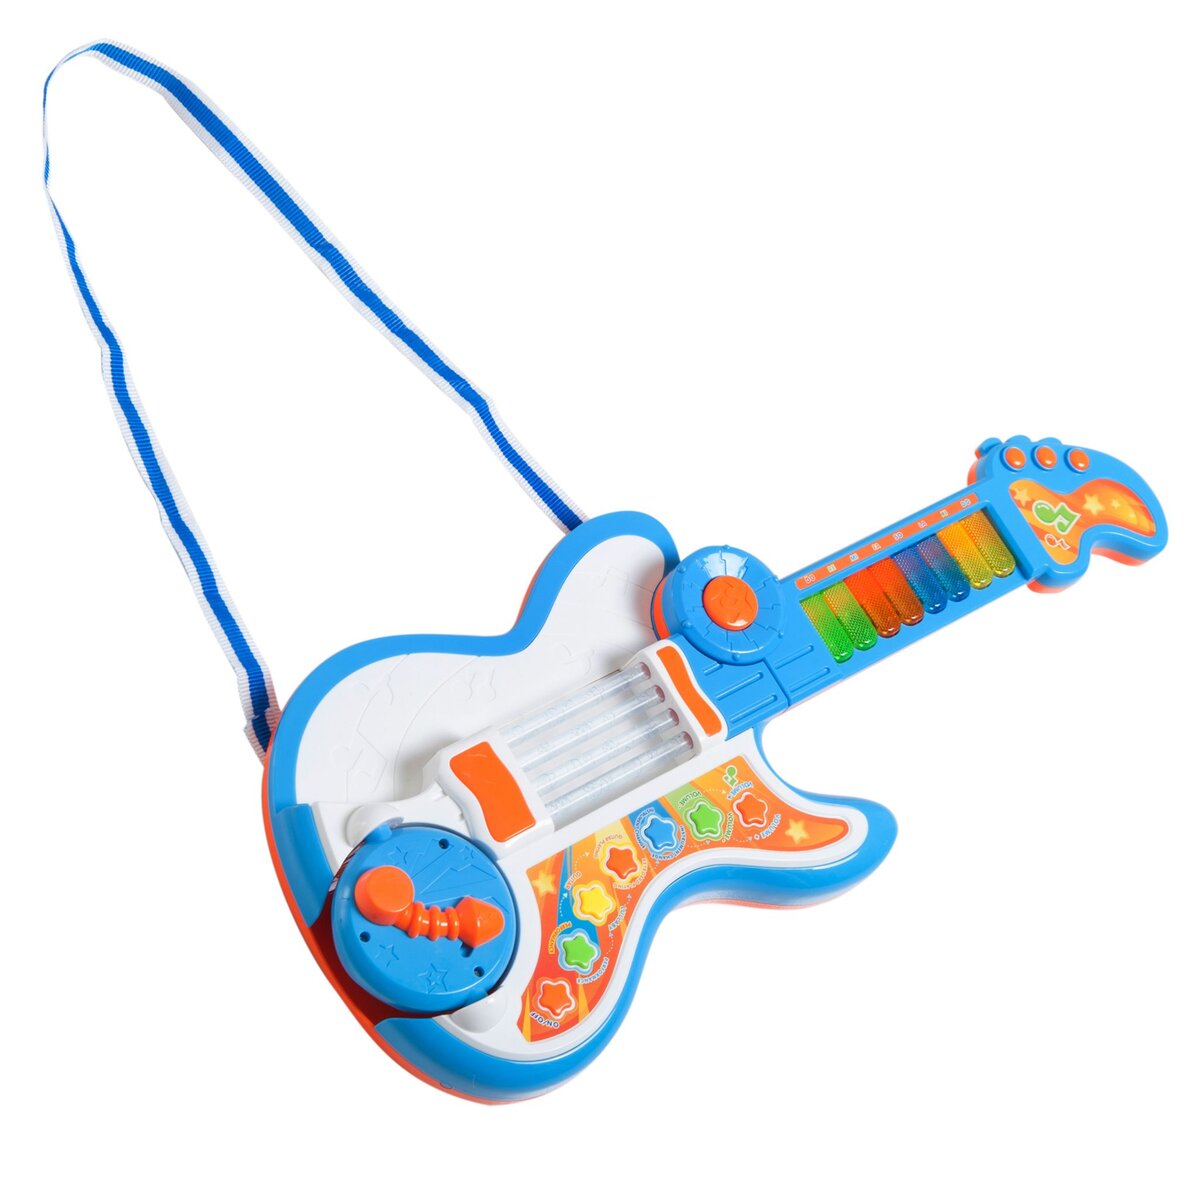 Instrument de musique bébé 1 an